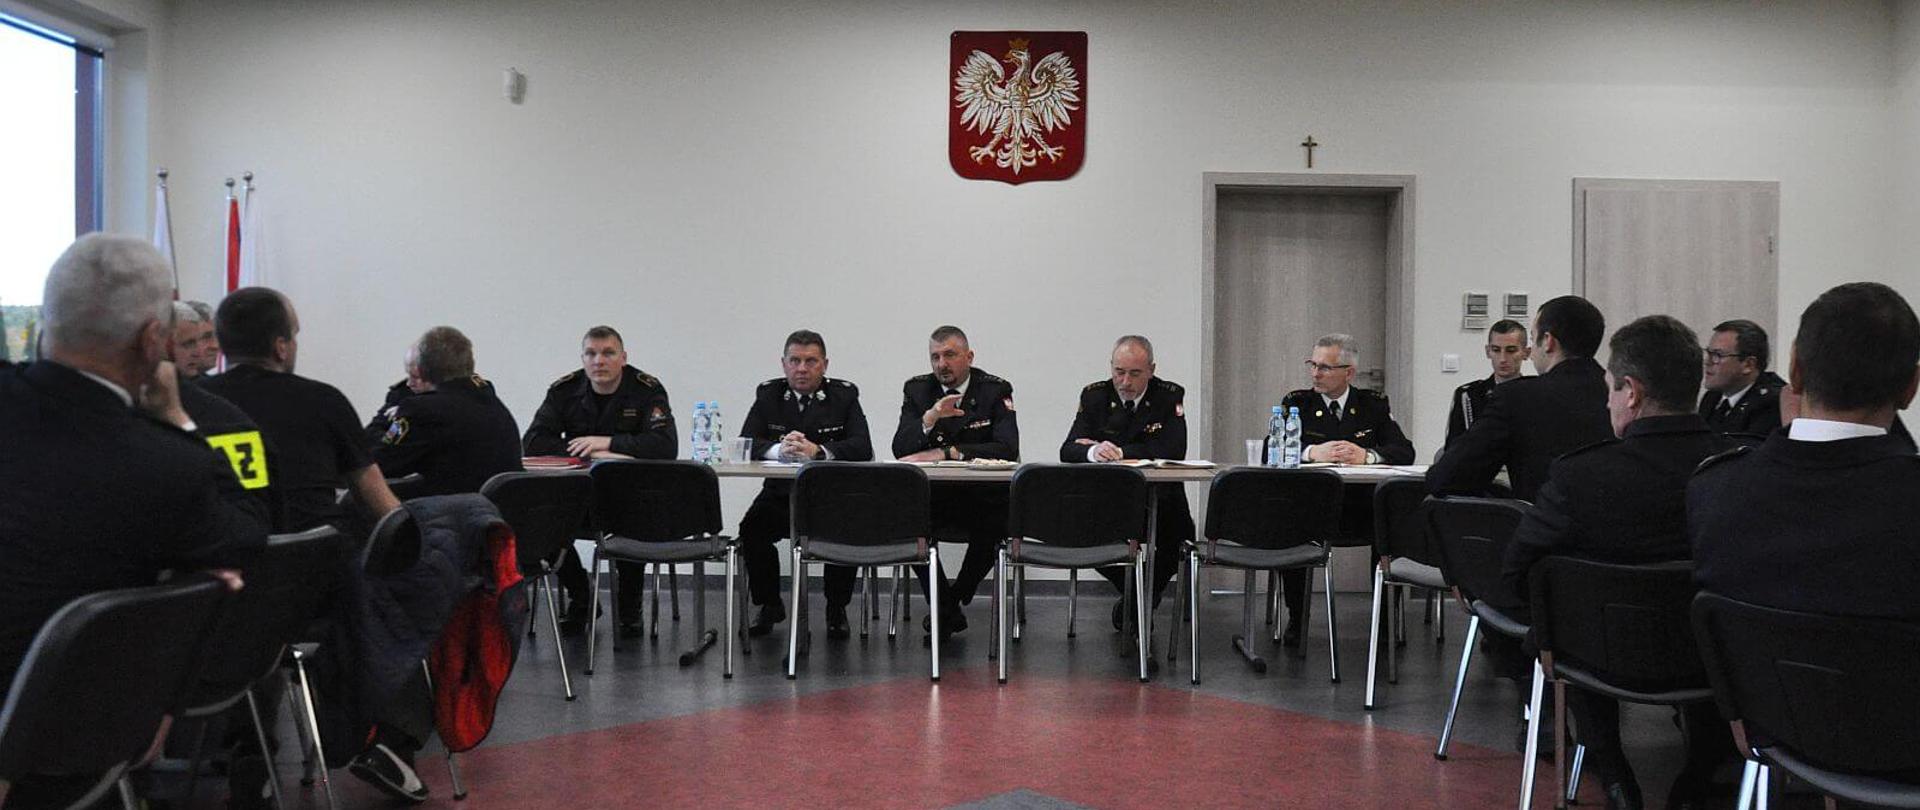 strażacy siedzący w trakcie spotkanie przy stołach w sali konferencyjnej, na ścianie sali widoczne jest godło Rzeczpospolitej Polskie